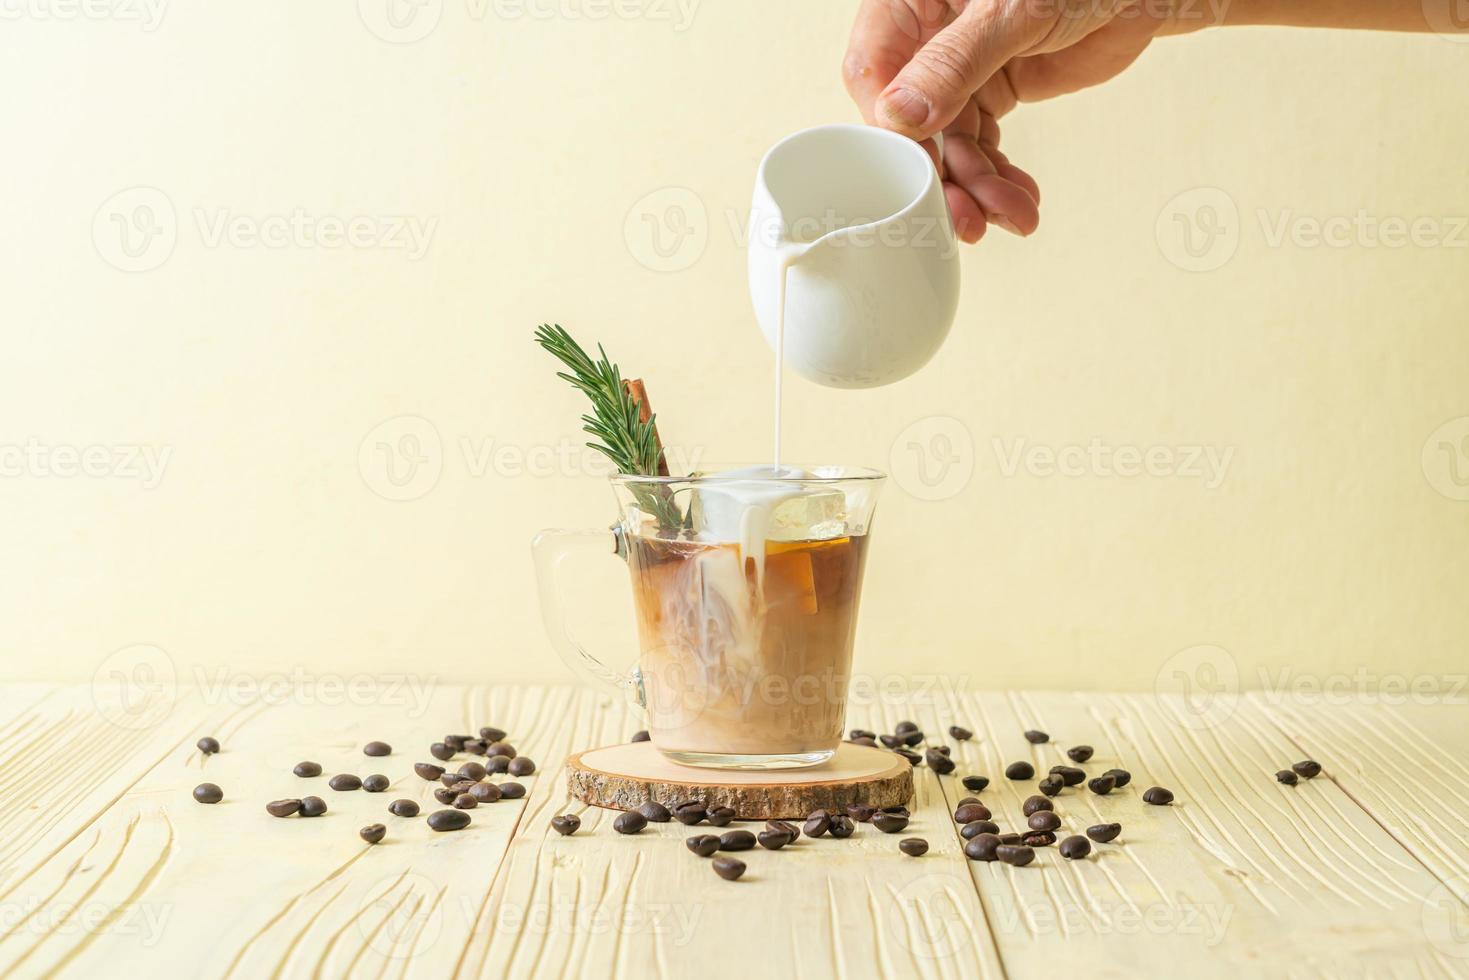 Gießen von Milch in schwarzes Kaffeeglas mit Eiswürfel, Zimt und Rosmarin auf Holzhintergrund foto